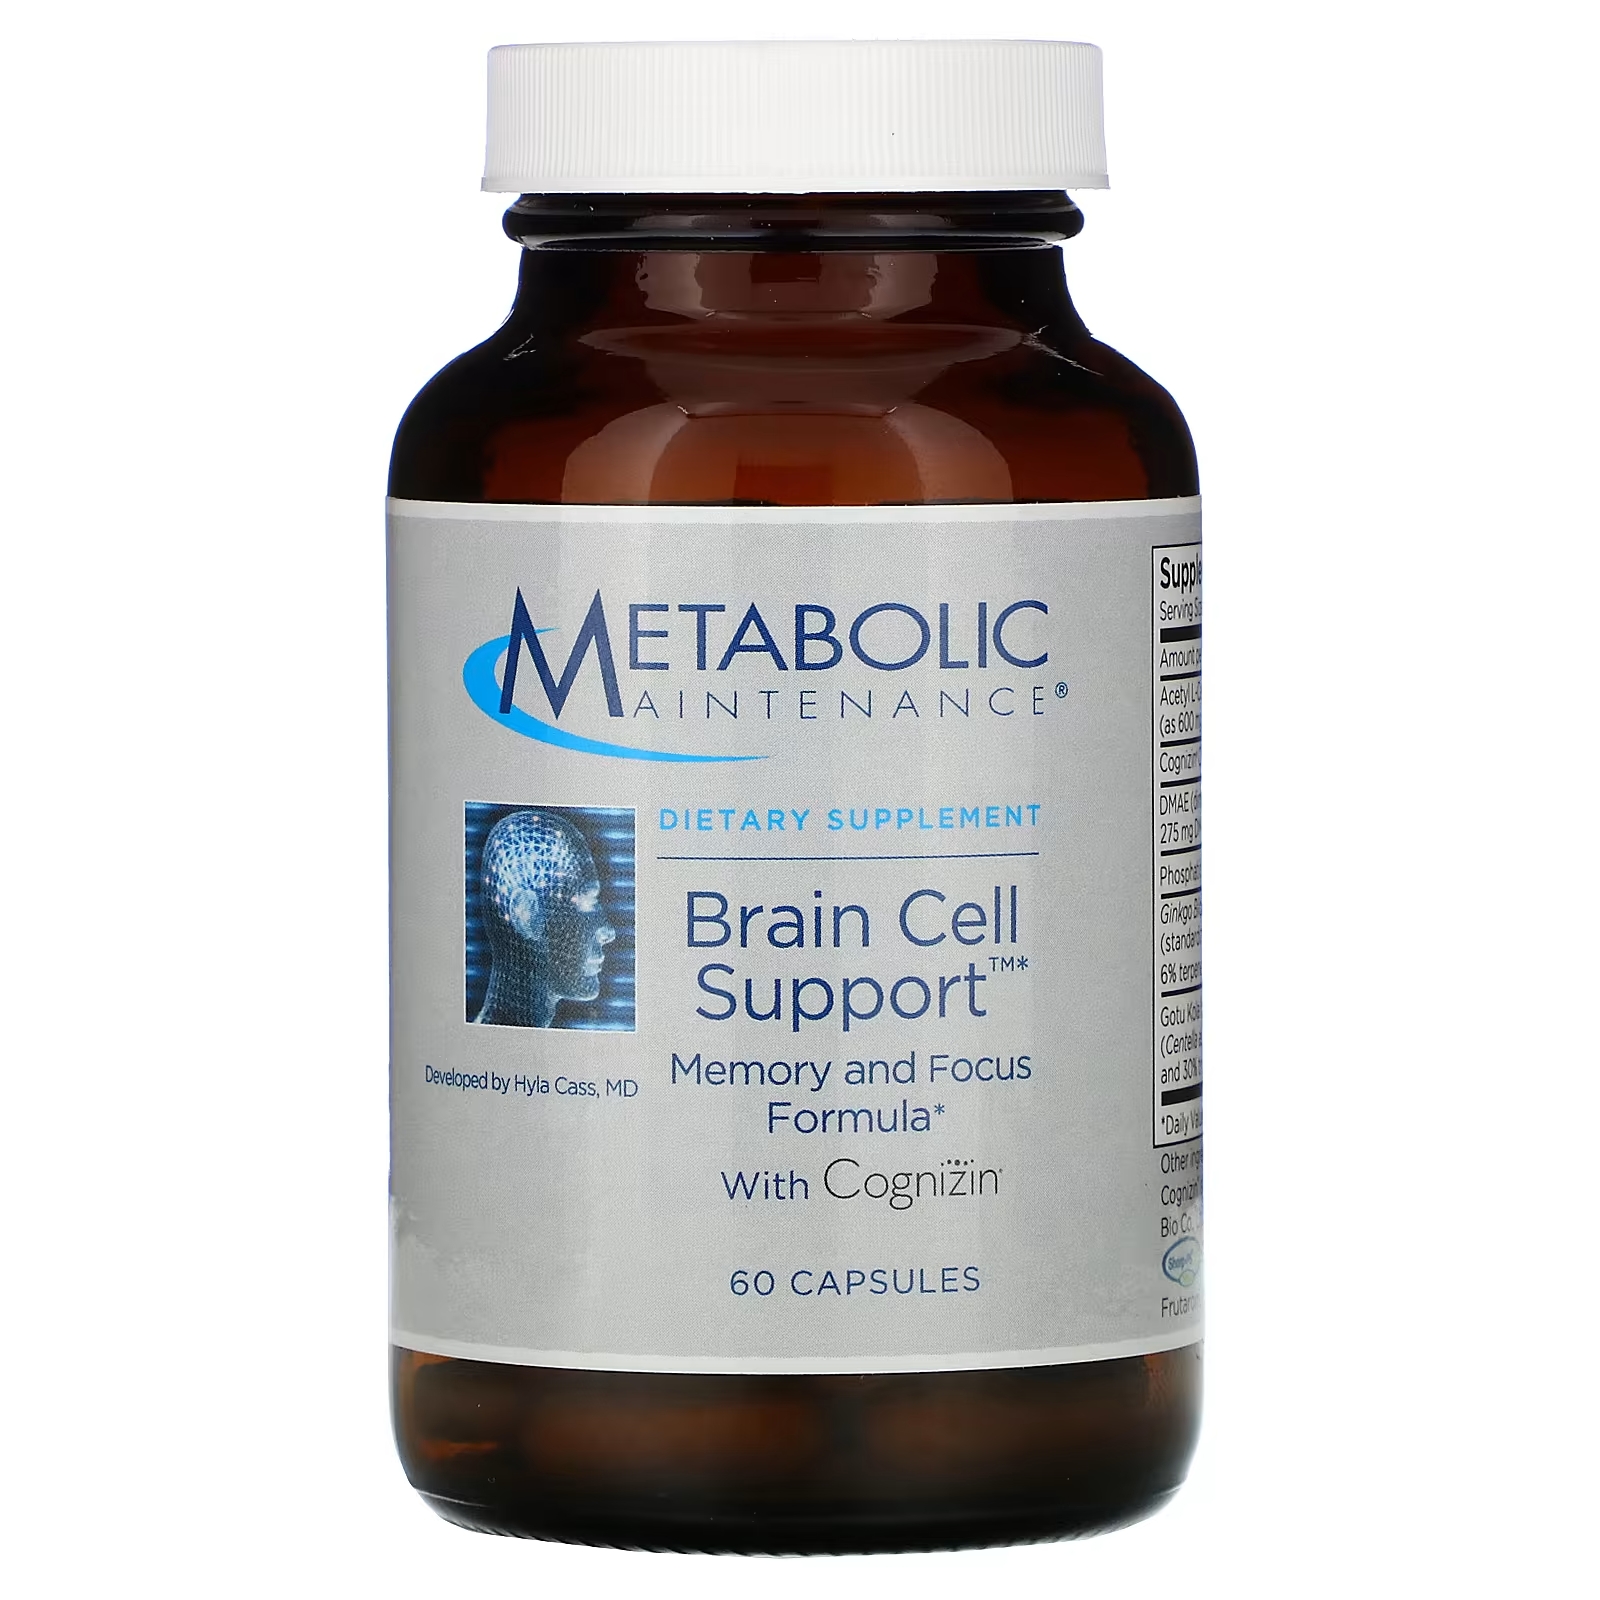 Metabolic Maintenance Поддержка клеток мозга с Cognizin, 60 капсул поддержка клеток мозга metabolic maintenance 60 капсул